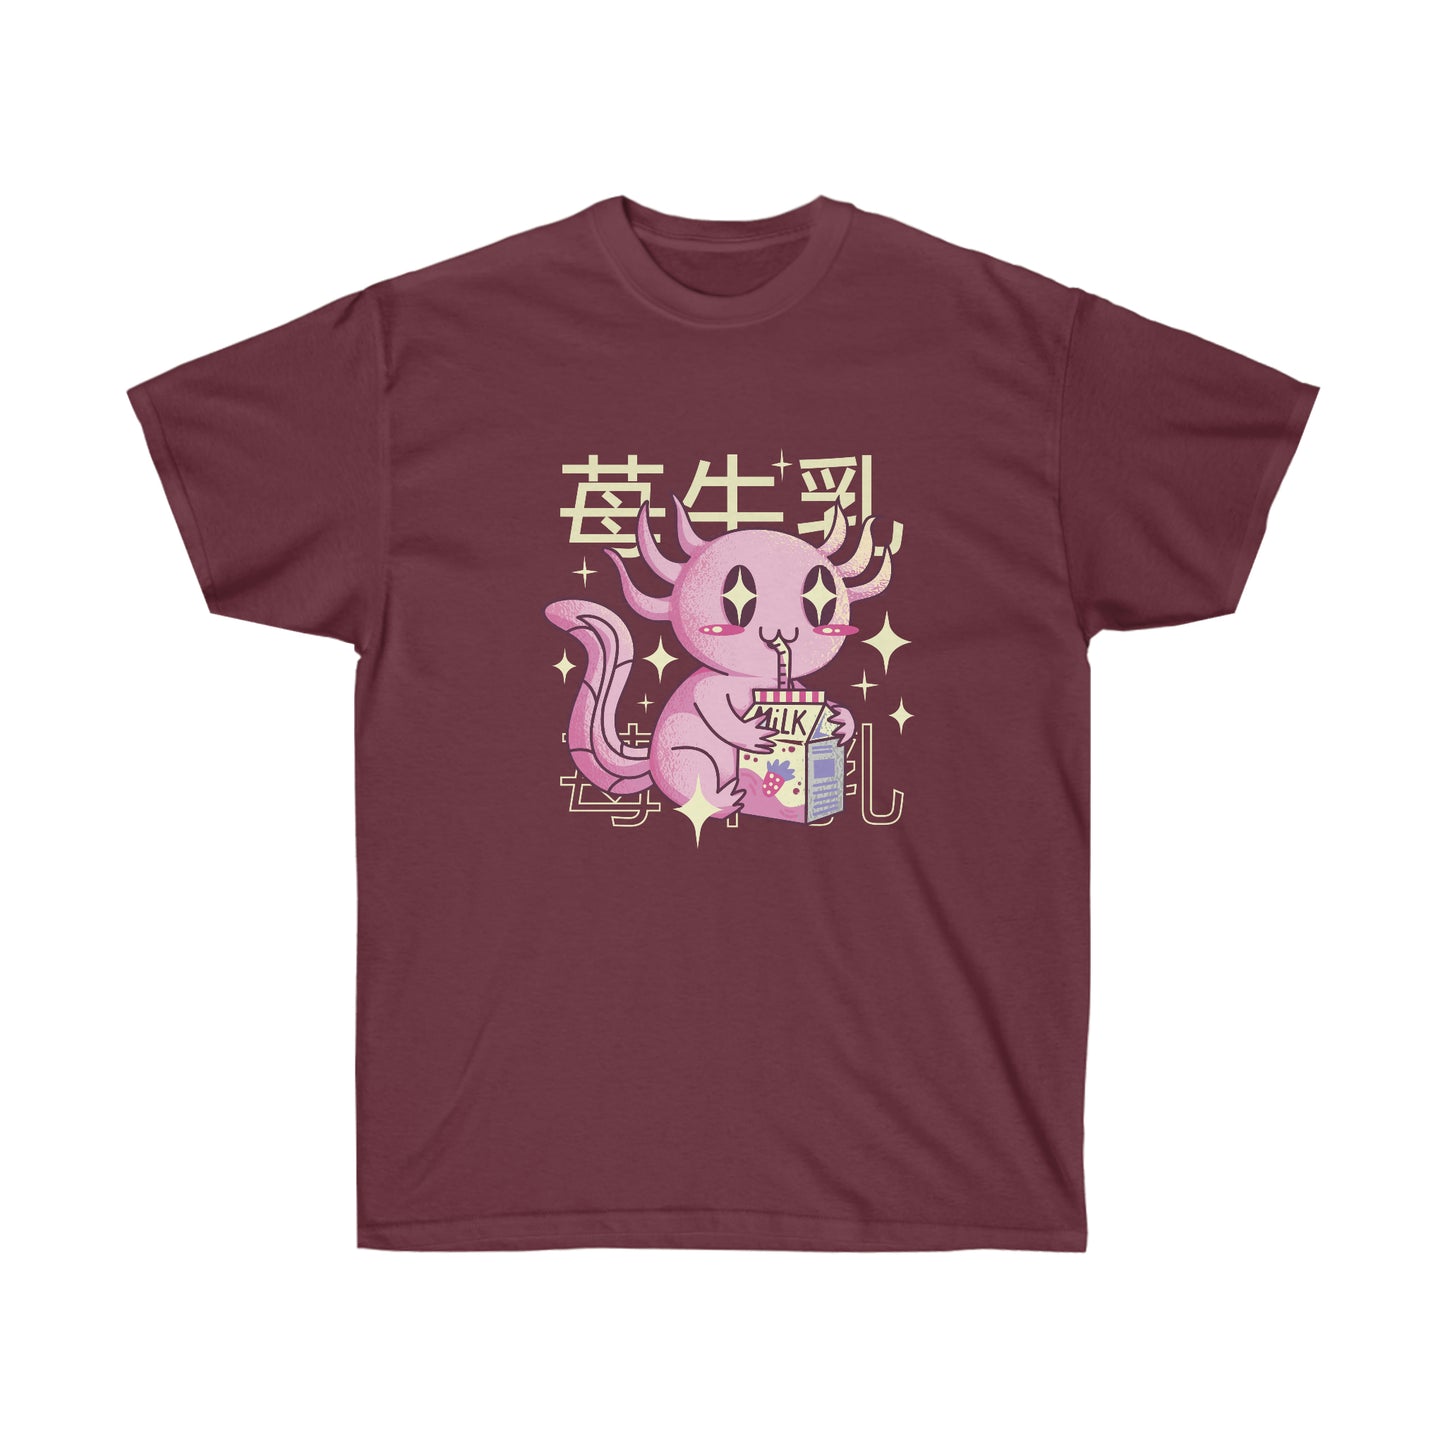 Kawaii Sweatshirt, Kawaii Clothing, Kawaii Clothes, Yami Kawaii Aesthetic, Pastel Kawaii Axolotl Sweatshirt T-Shirt